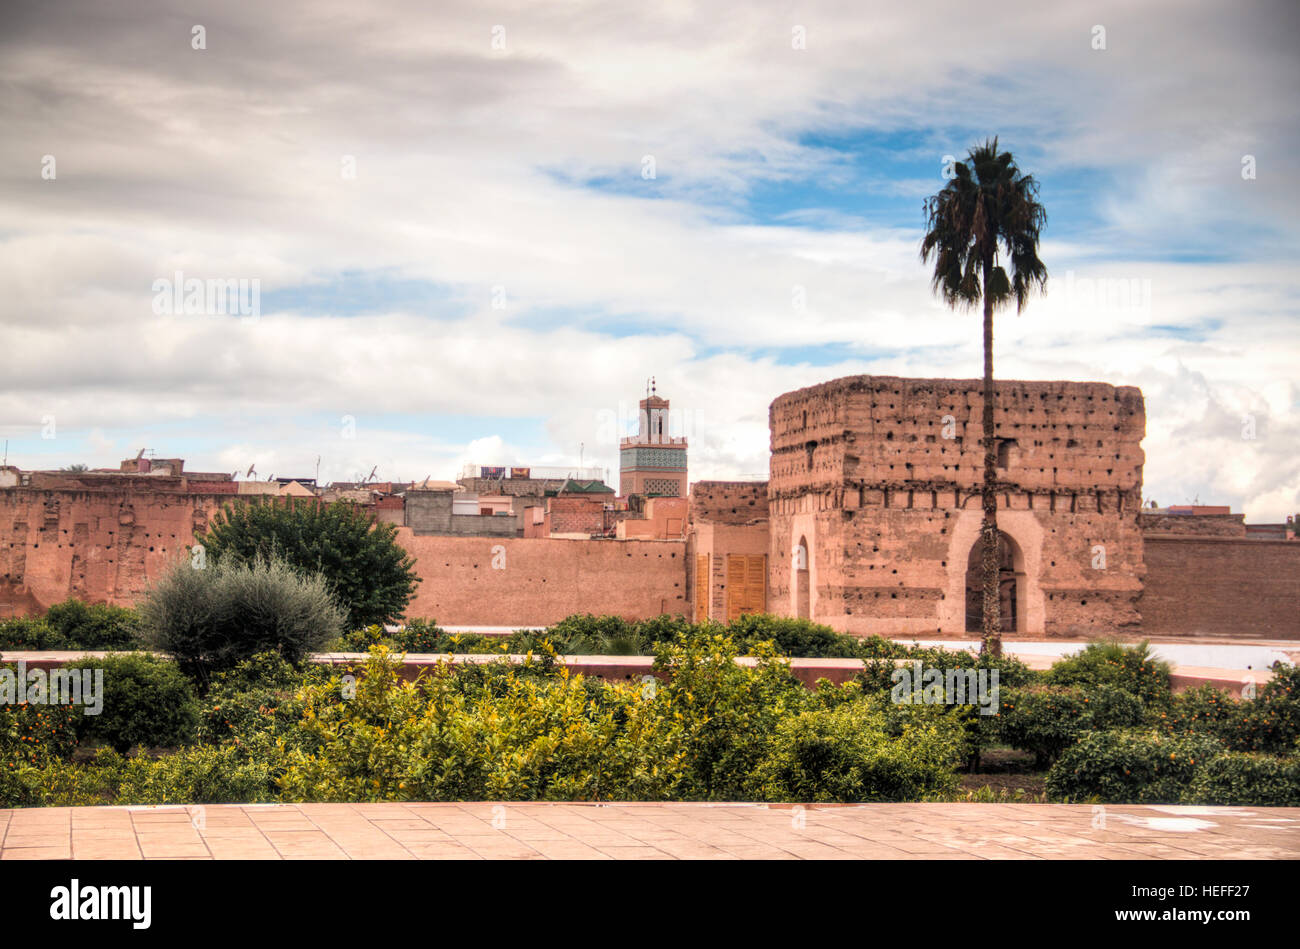 All'interno dell'antico palazzo di Bab Agnaou, una delle attrazioni principali di Marrakech in Marocco Foto Stock